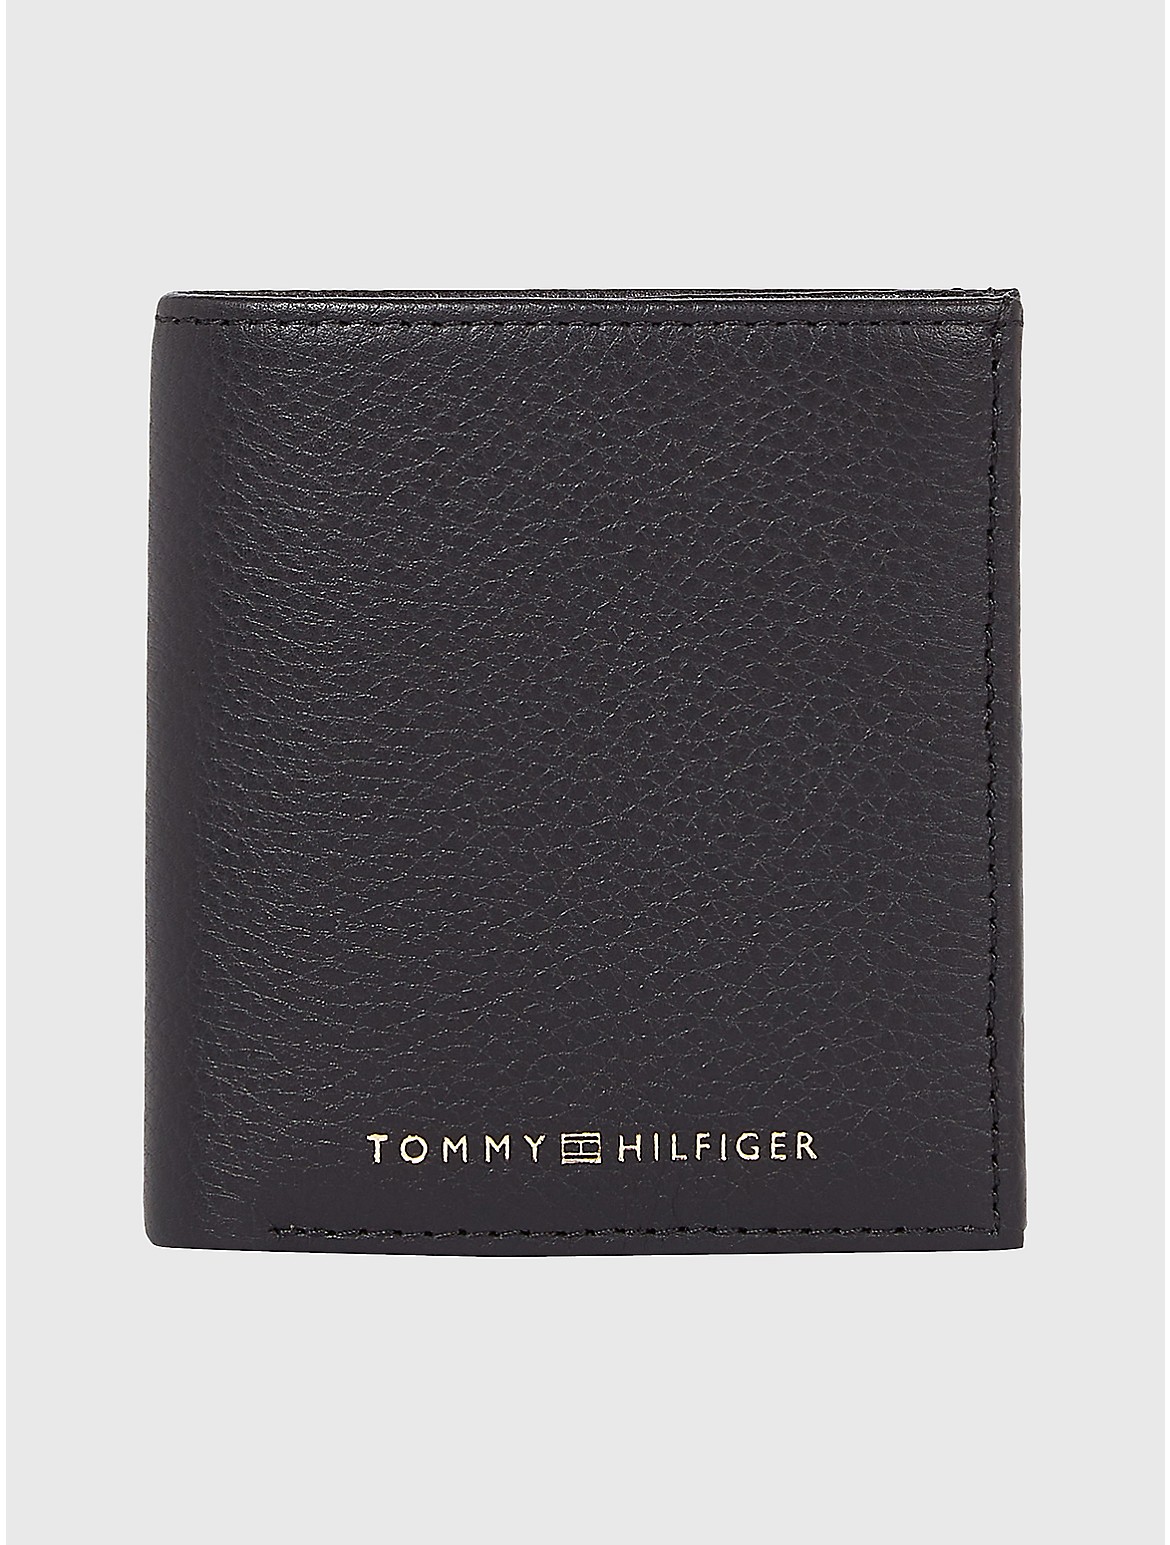 Tommy Hilfiger Men's Pebbled Leather Bifold Wallet - Black